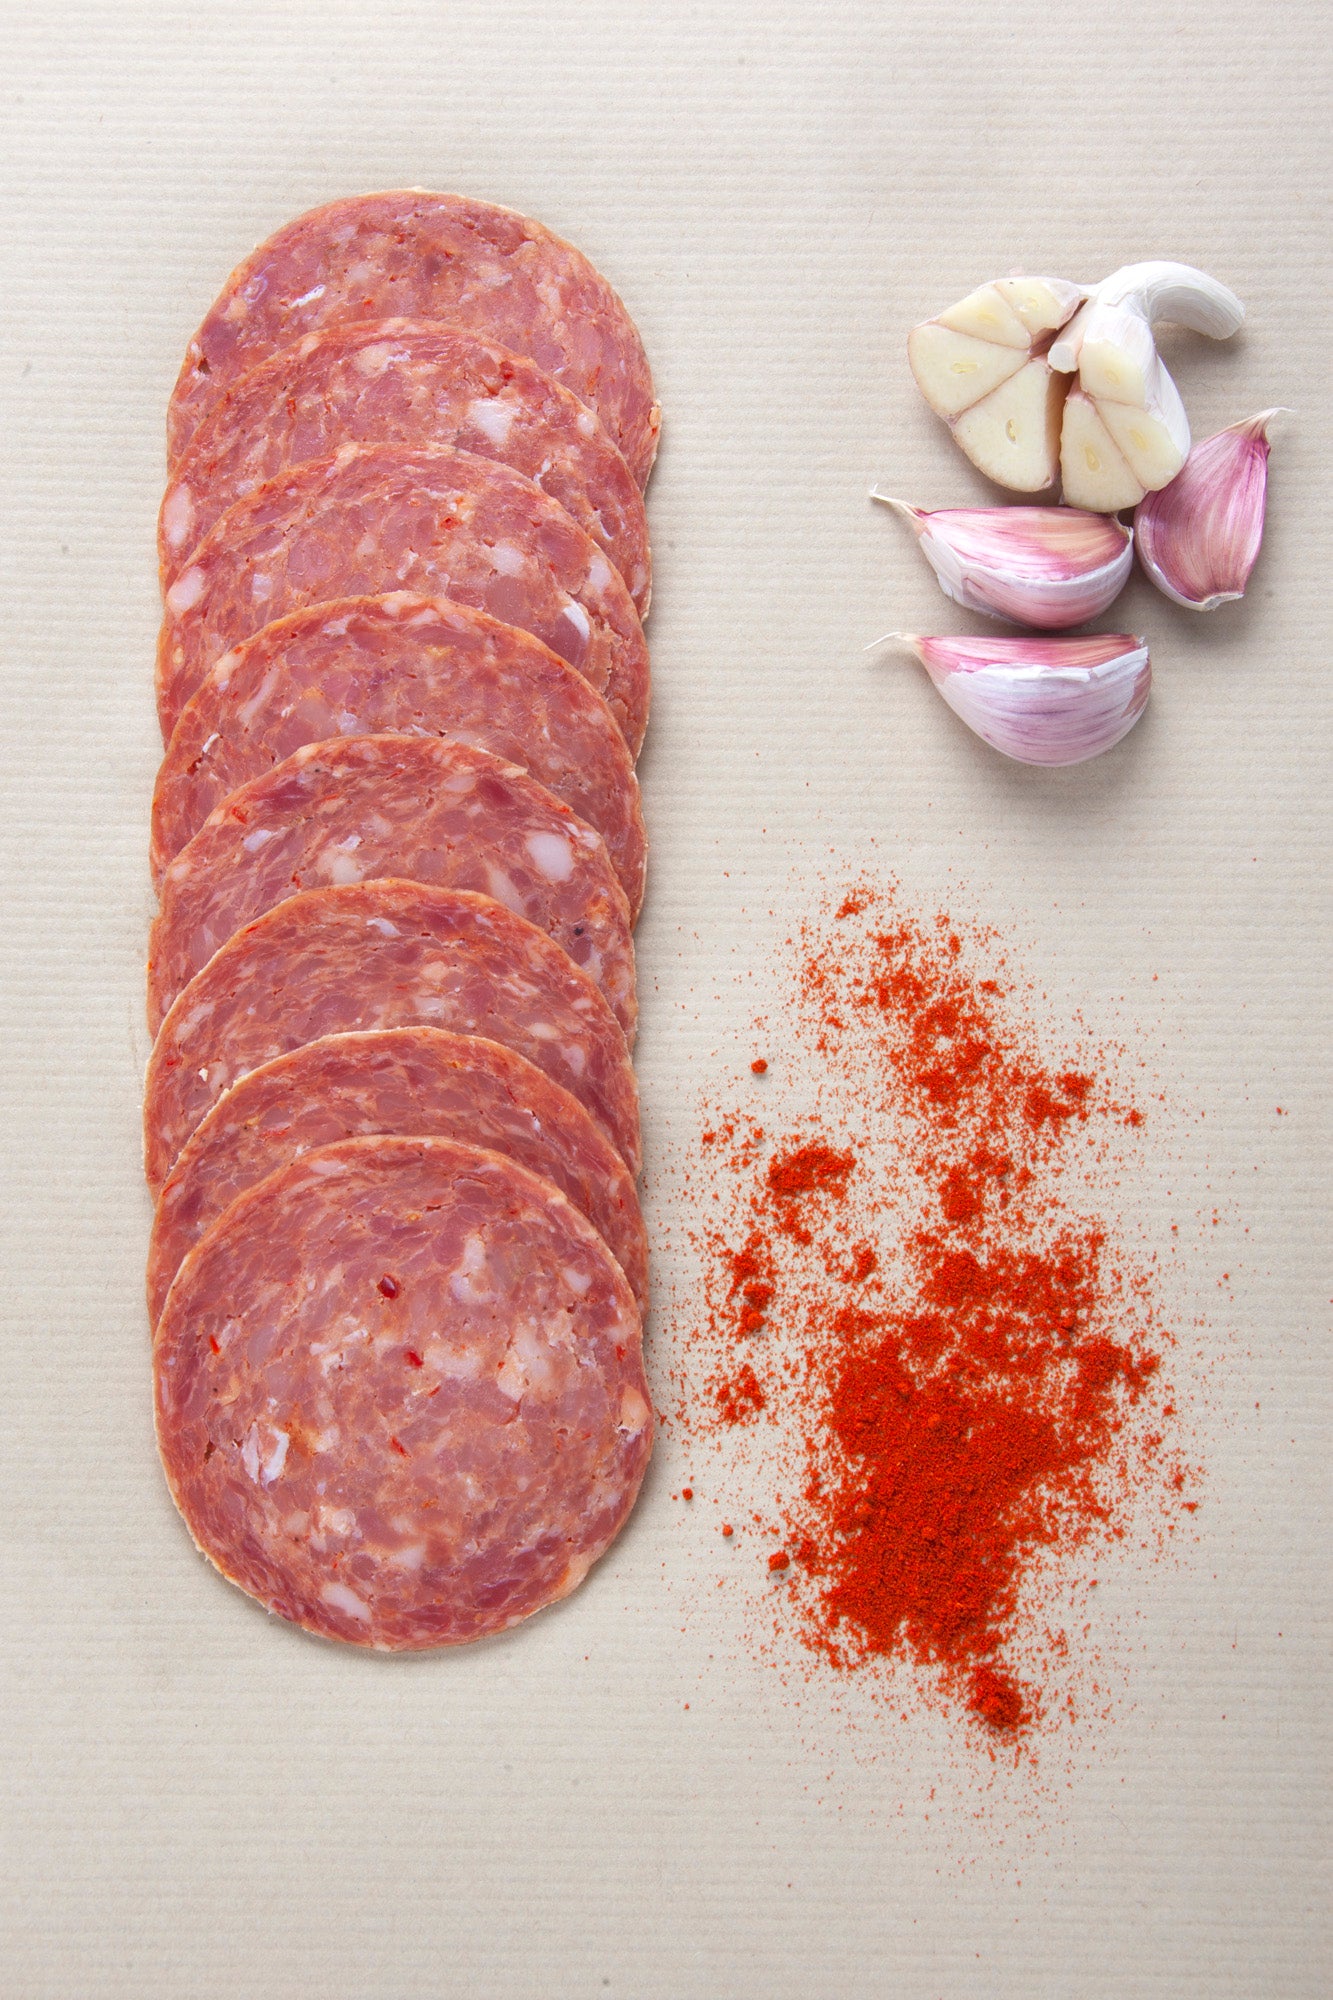 Marsh Pig Salami [Sliced] Garlic & Paprika - 100g